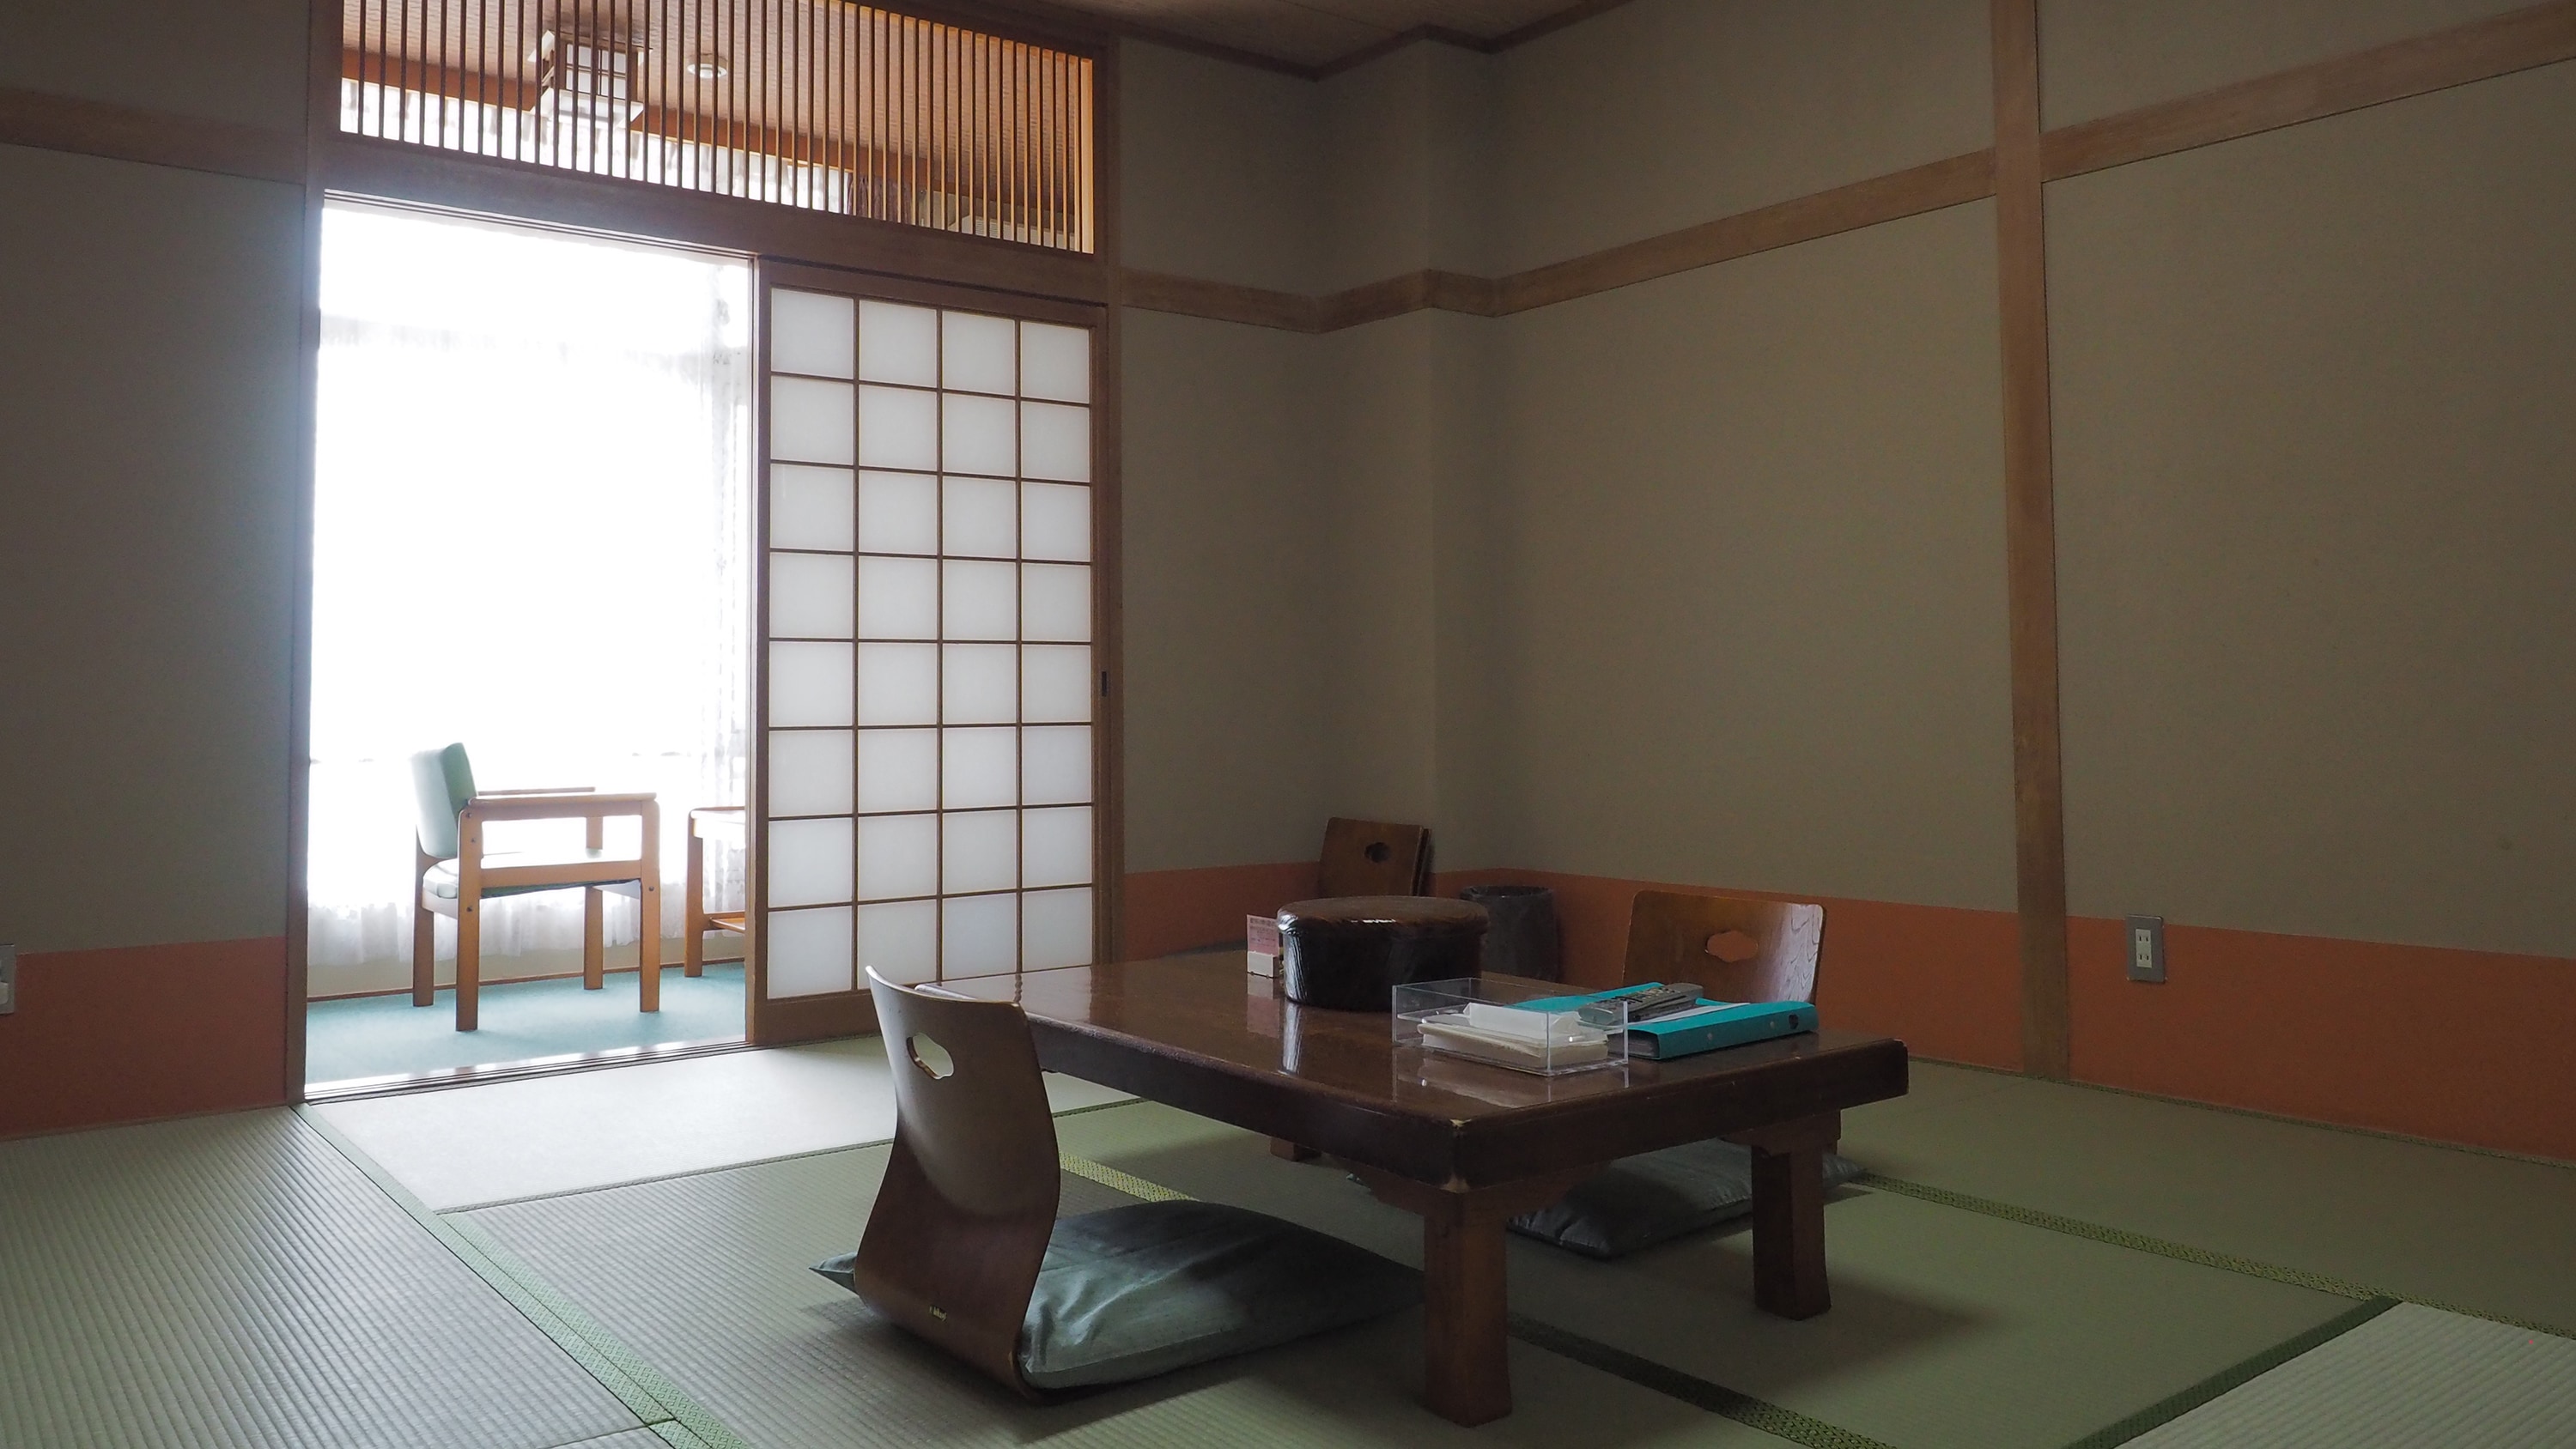 Bangunan utama, kamar bergaya Jepang 8 tikar tatami (contoh)